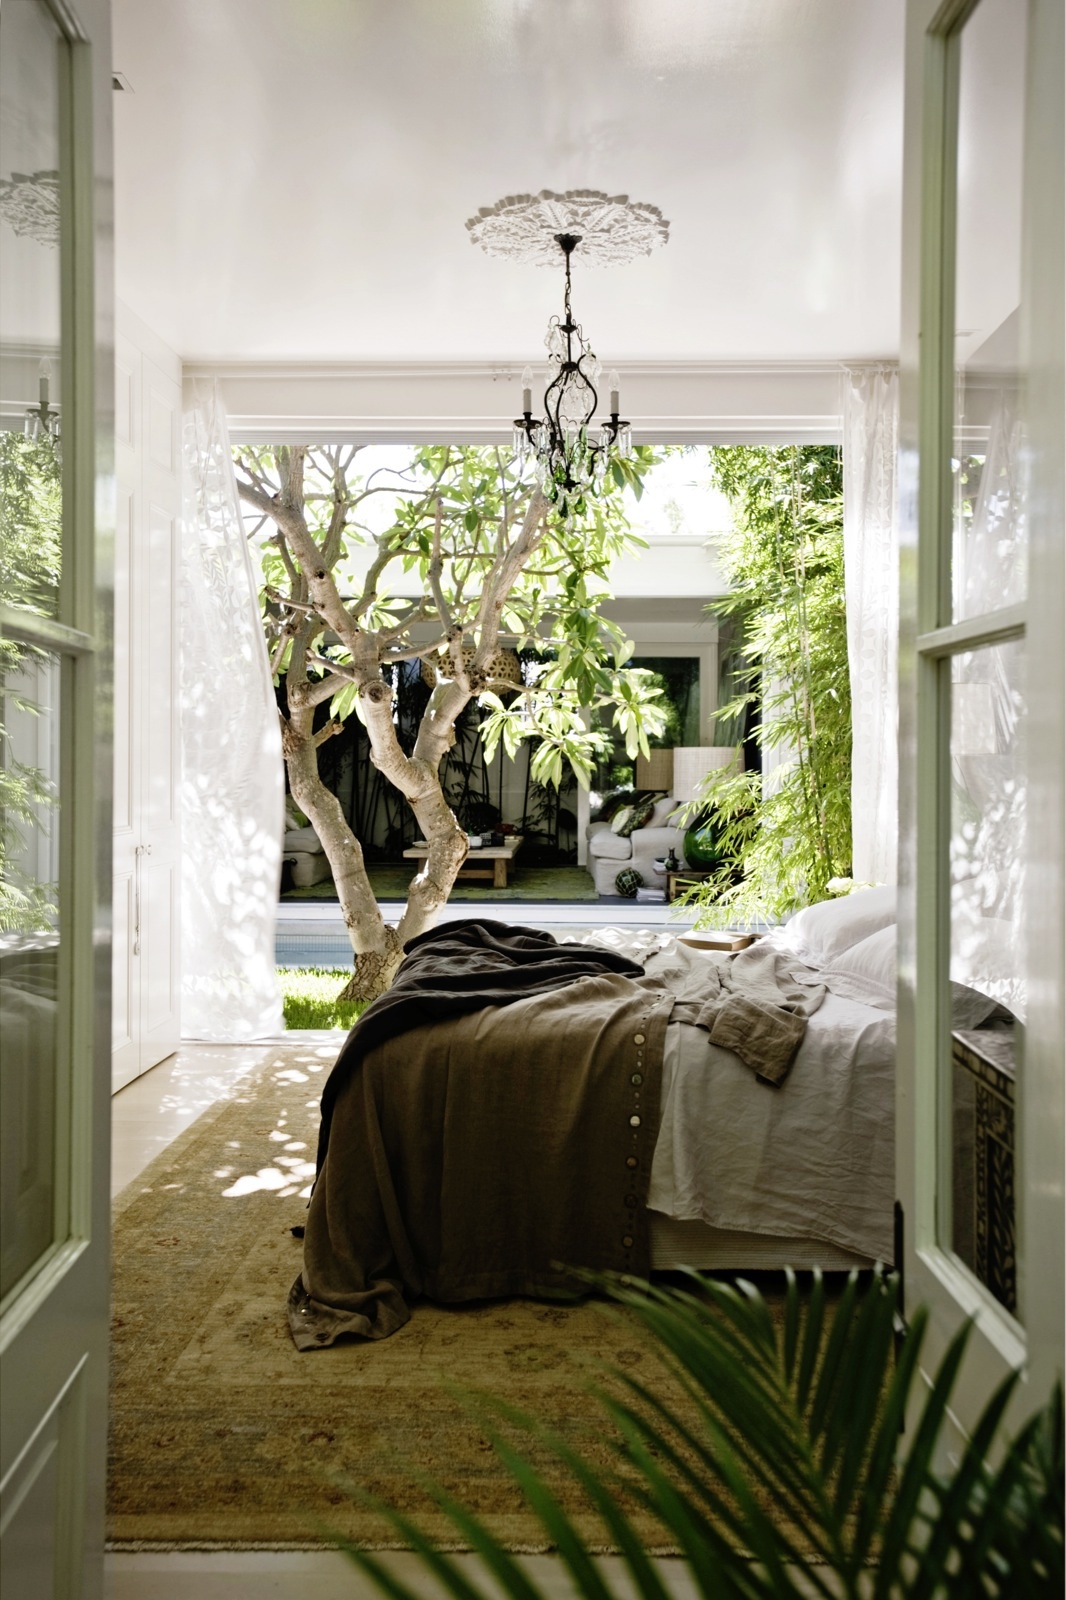 Ngôi nhà rộng lớn với phòng ngủ riêng biệt sử dụng gam màu trắng - xanh lá cây làm chủ đạo. Từ cánh cửa sơn màu xanh bạc hà, thảm trải sàn cho đến chậu cây cảnh, đặc biệt là view “cây nhà lá vườn”,, nhìn thẳng sang khu vực phòng khách bên kia.